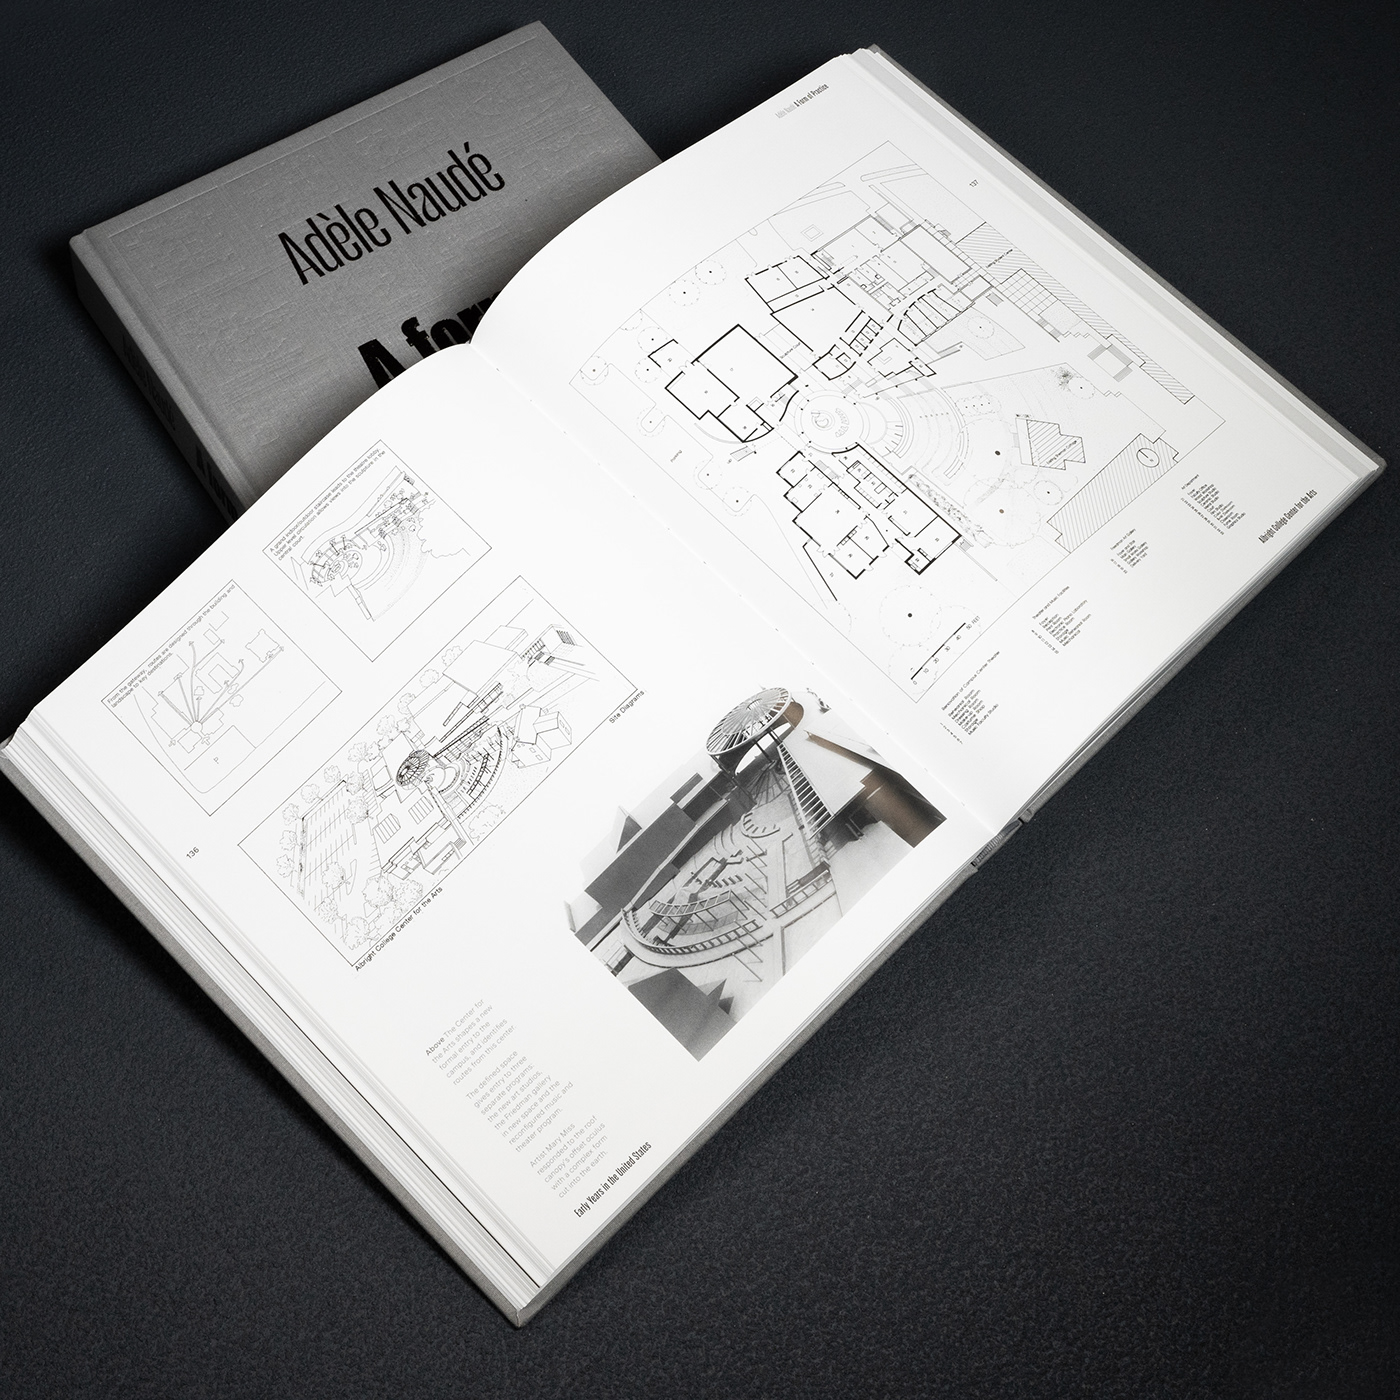 art architecture book Monograph print publication Layout architect architectural design built environment